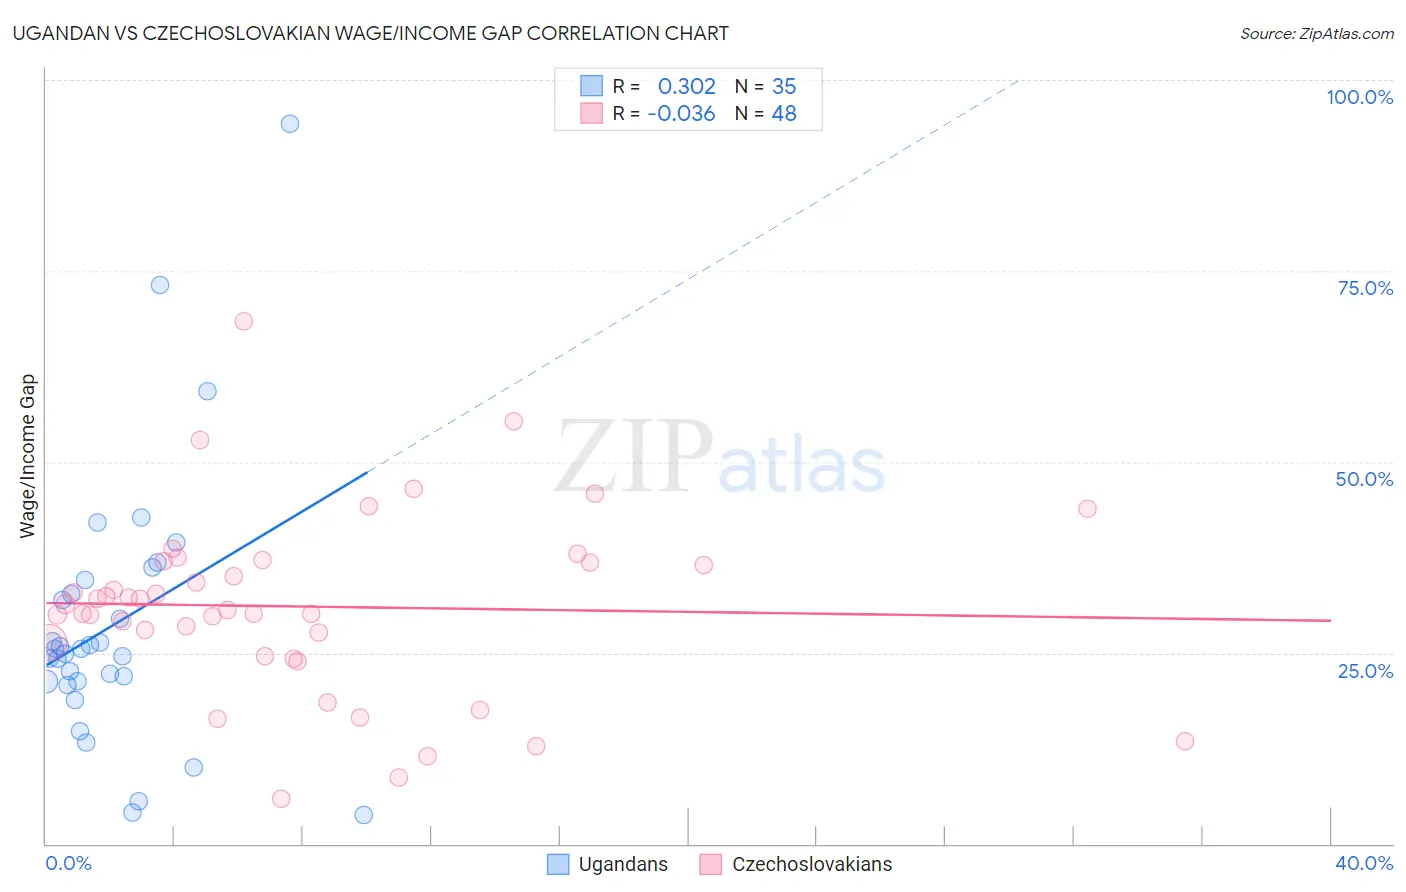 Ugandan vs Czechoslovakian Wage/Income Gap